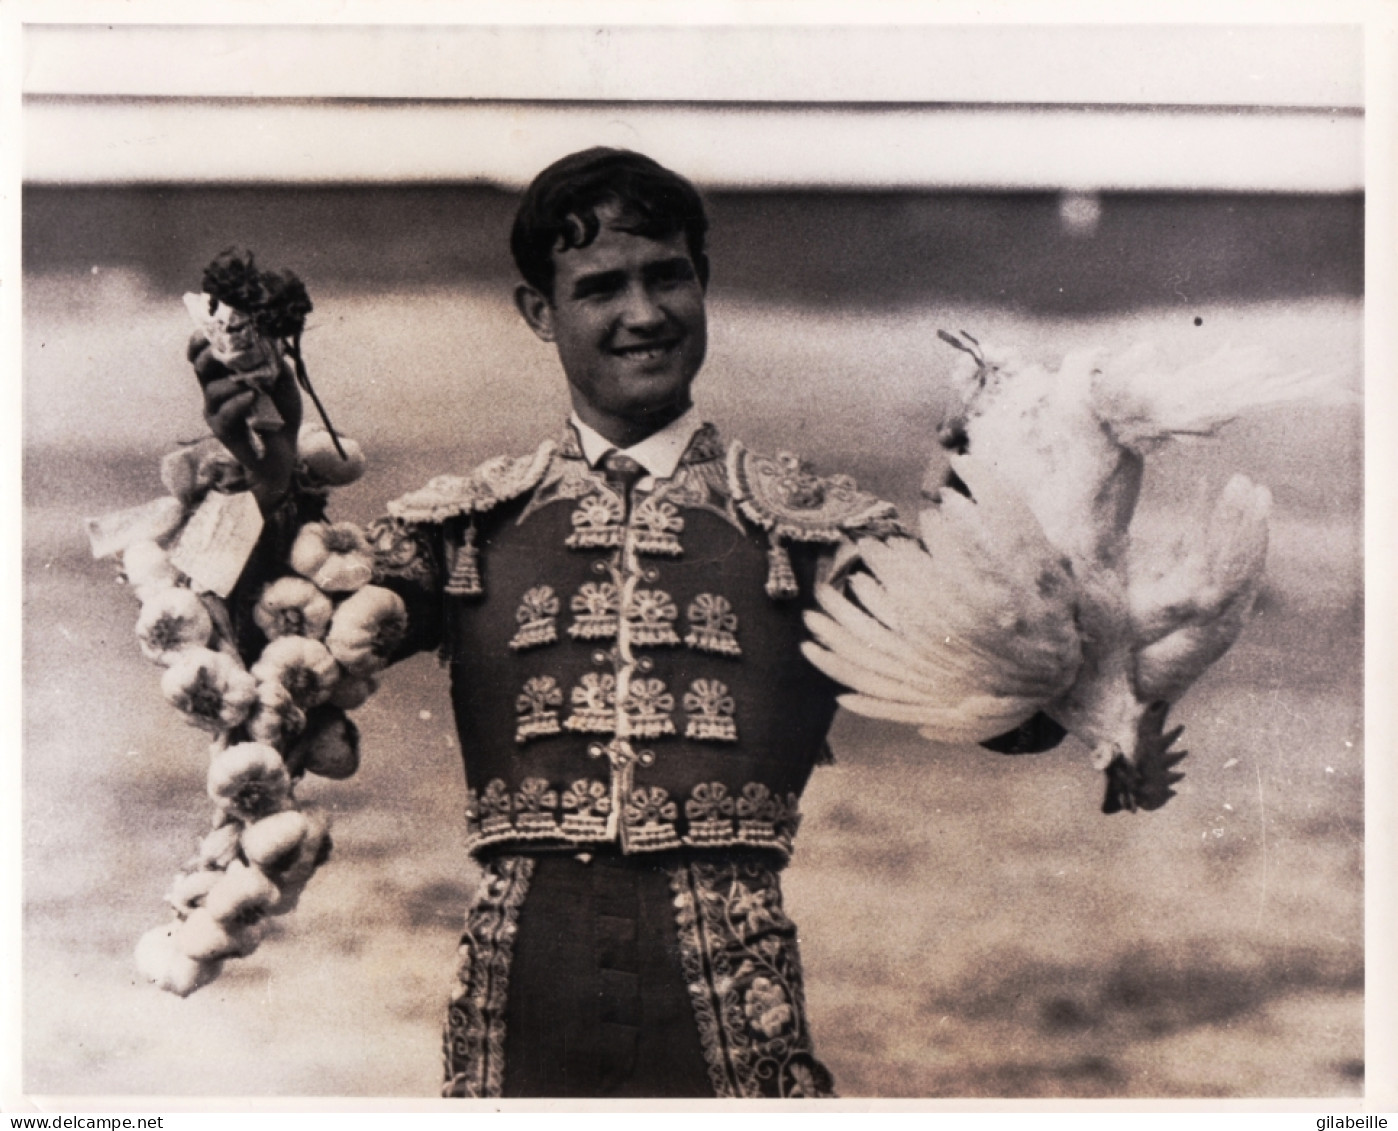 Photo Originale EUROPIX- Tauromachie - Corrida -  MADRID - Apprentice Bullfighter TEODORO LIBREREO - Juillet 1968 - Rare - Sports